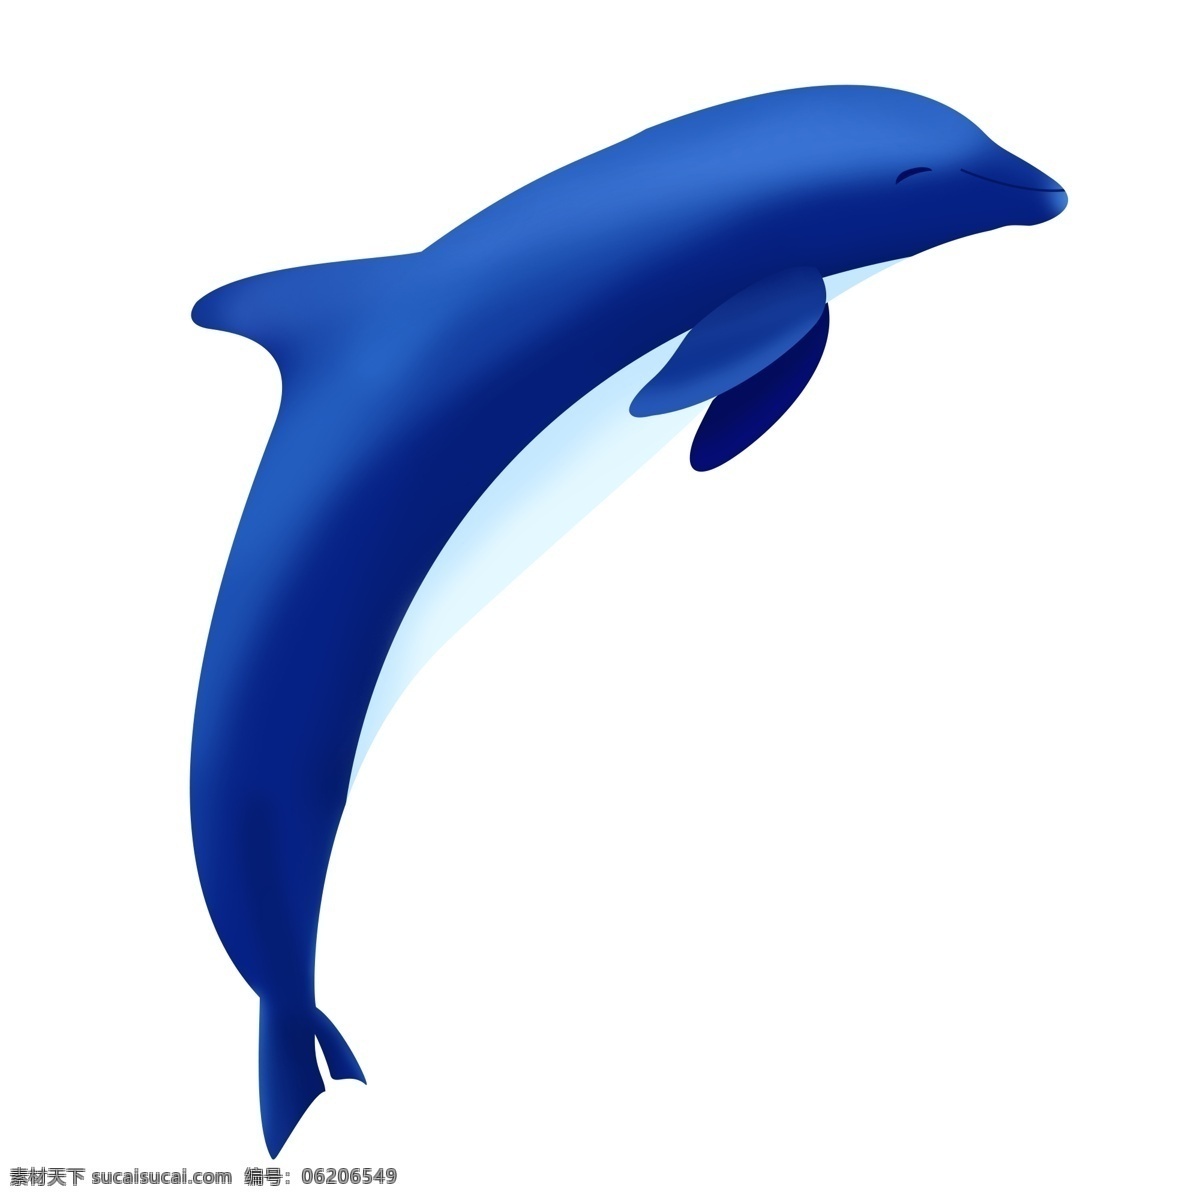 海洋生物 蓝色 海豚 海洋